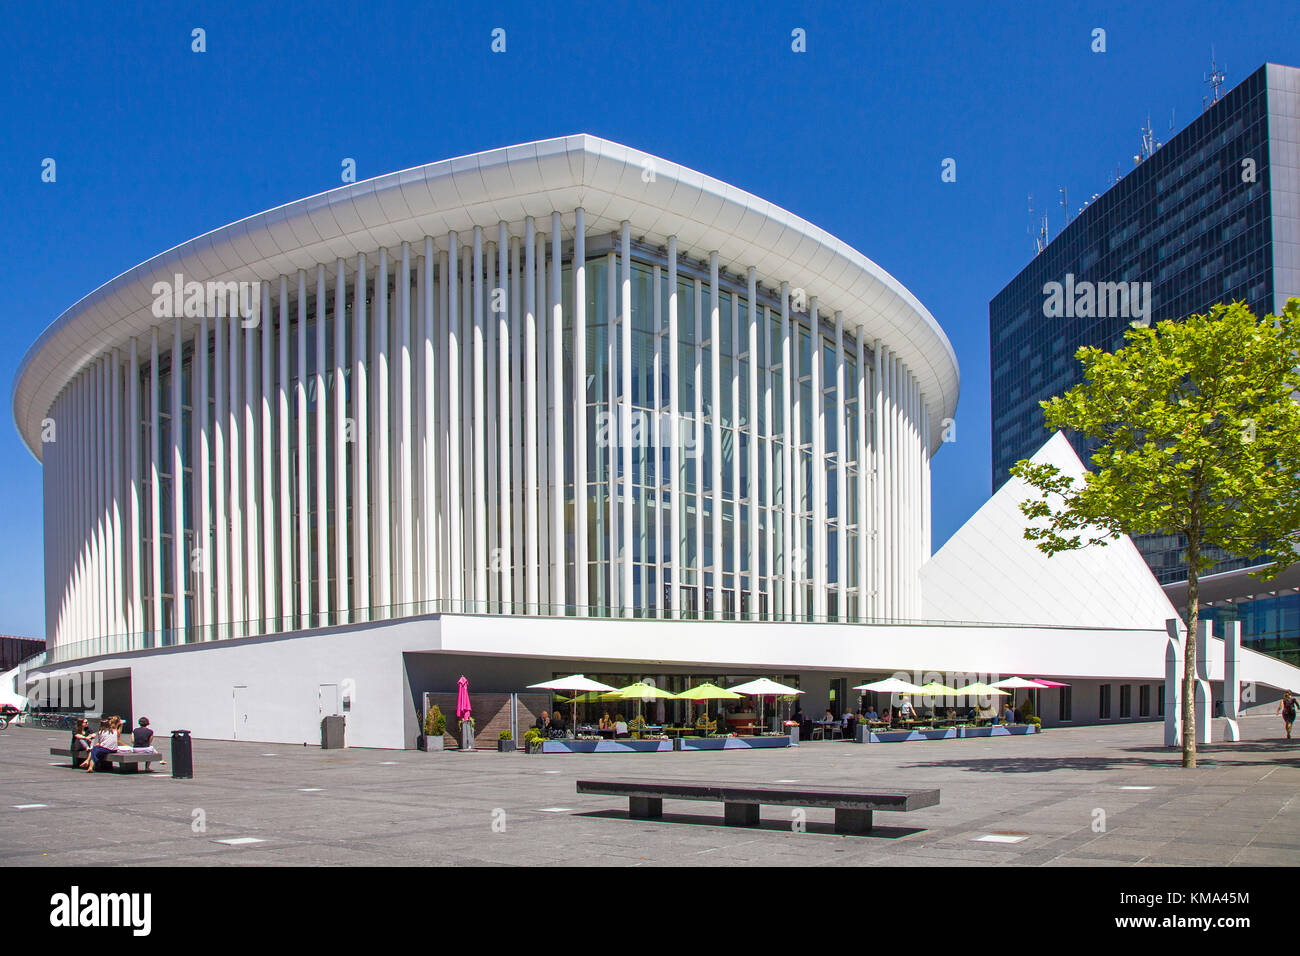 Salle philharmonique de Luxembourg en place de l'Europe, plateau du Kirchberg, Luxembourg, Luxembourg, Europe Banque D'Images